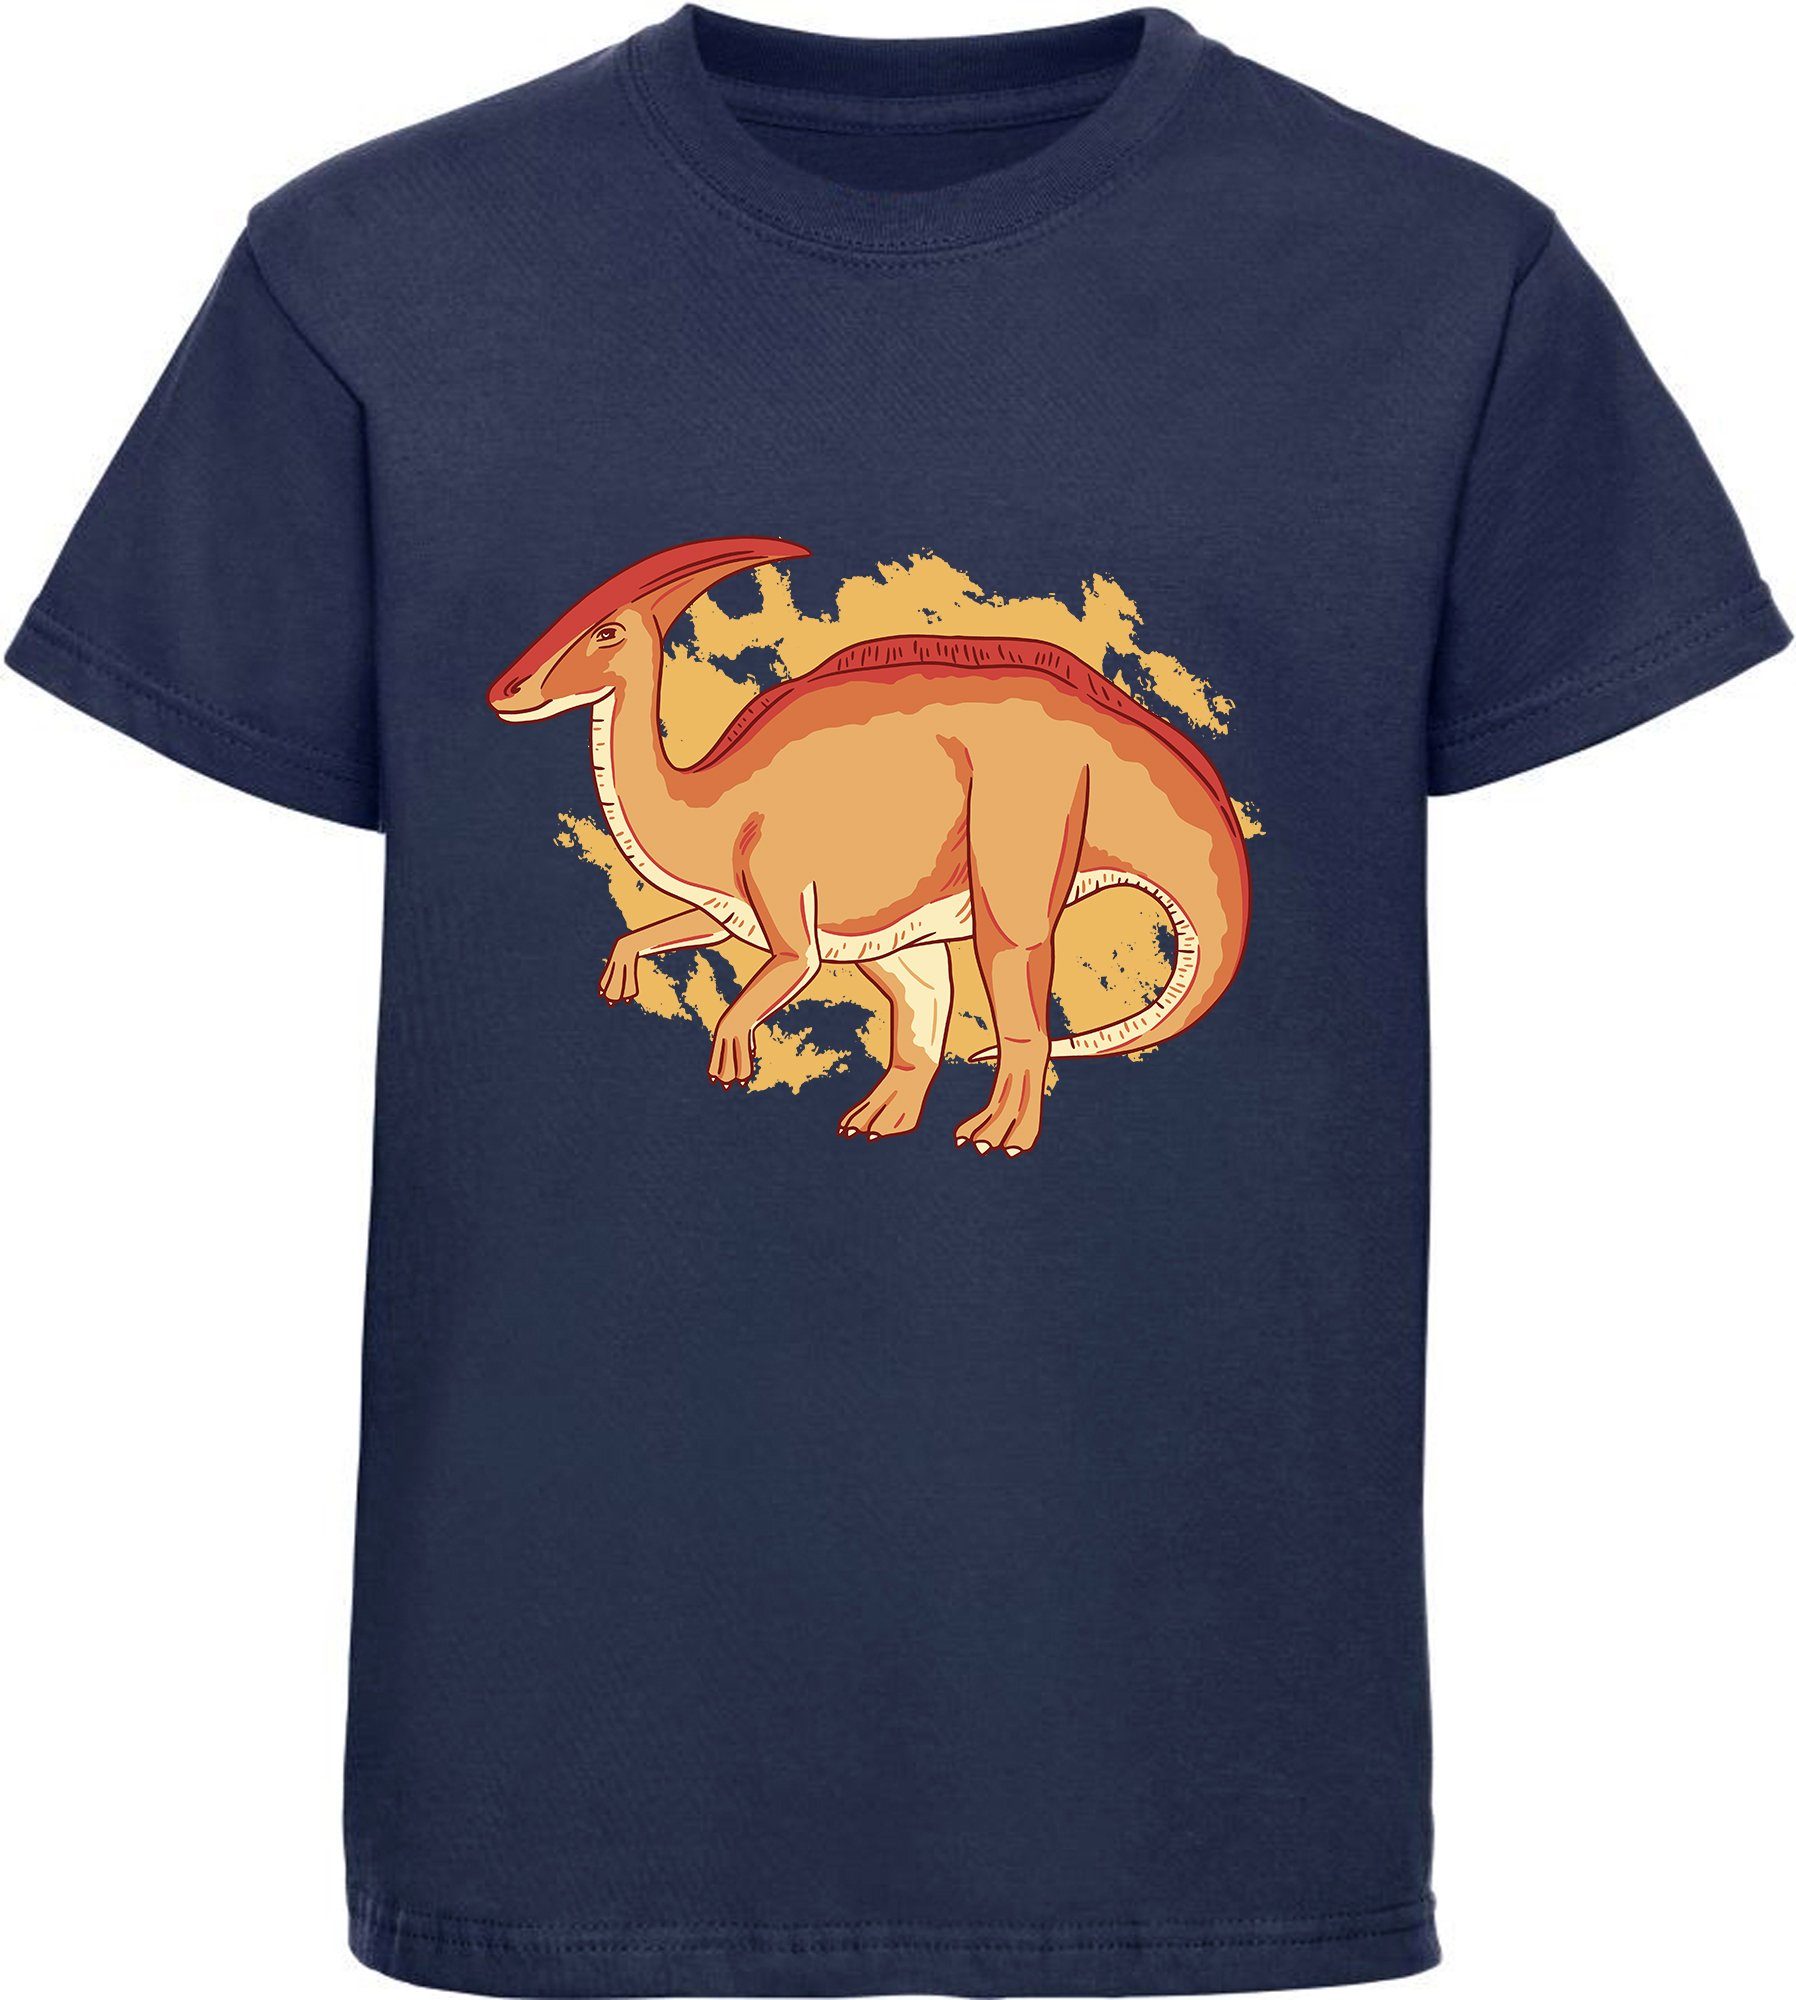 MyDesign24 Print-Shirt bedrucktes T-Shirt weiß, Baumwollshirt schwarz, i86 blau, rot, blau mit Dino, mit Kinder navy Parasaurolophus